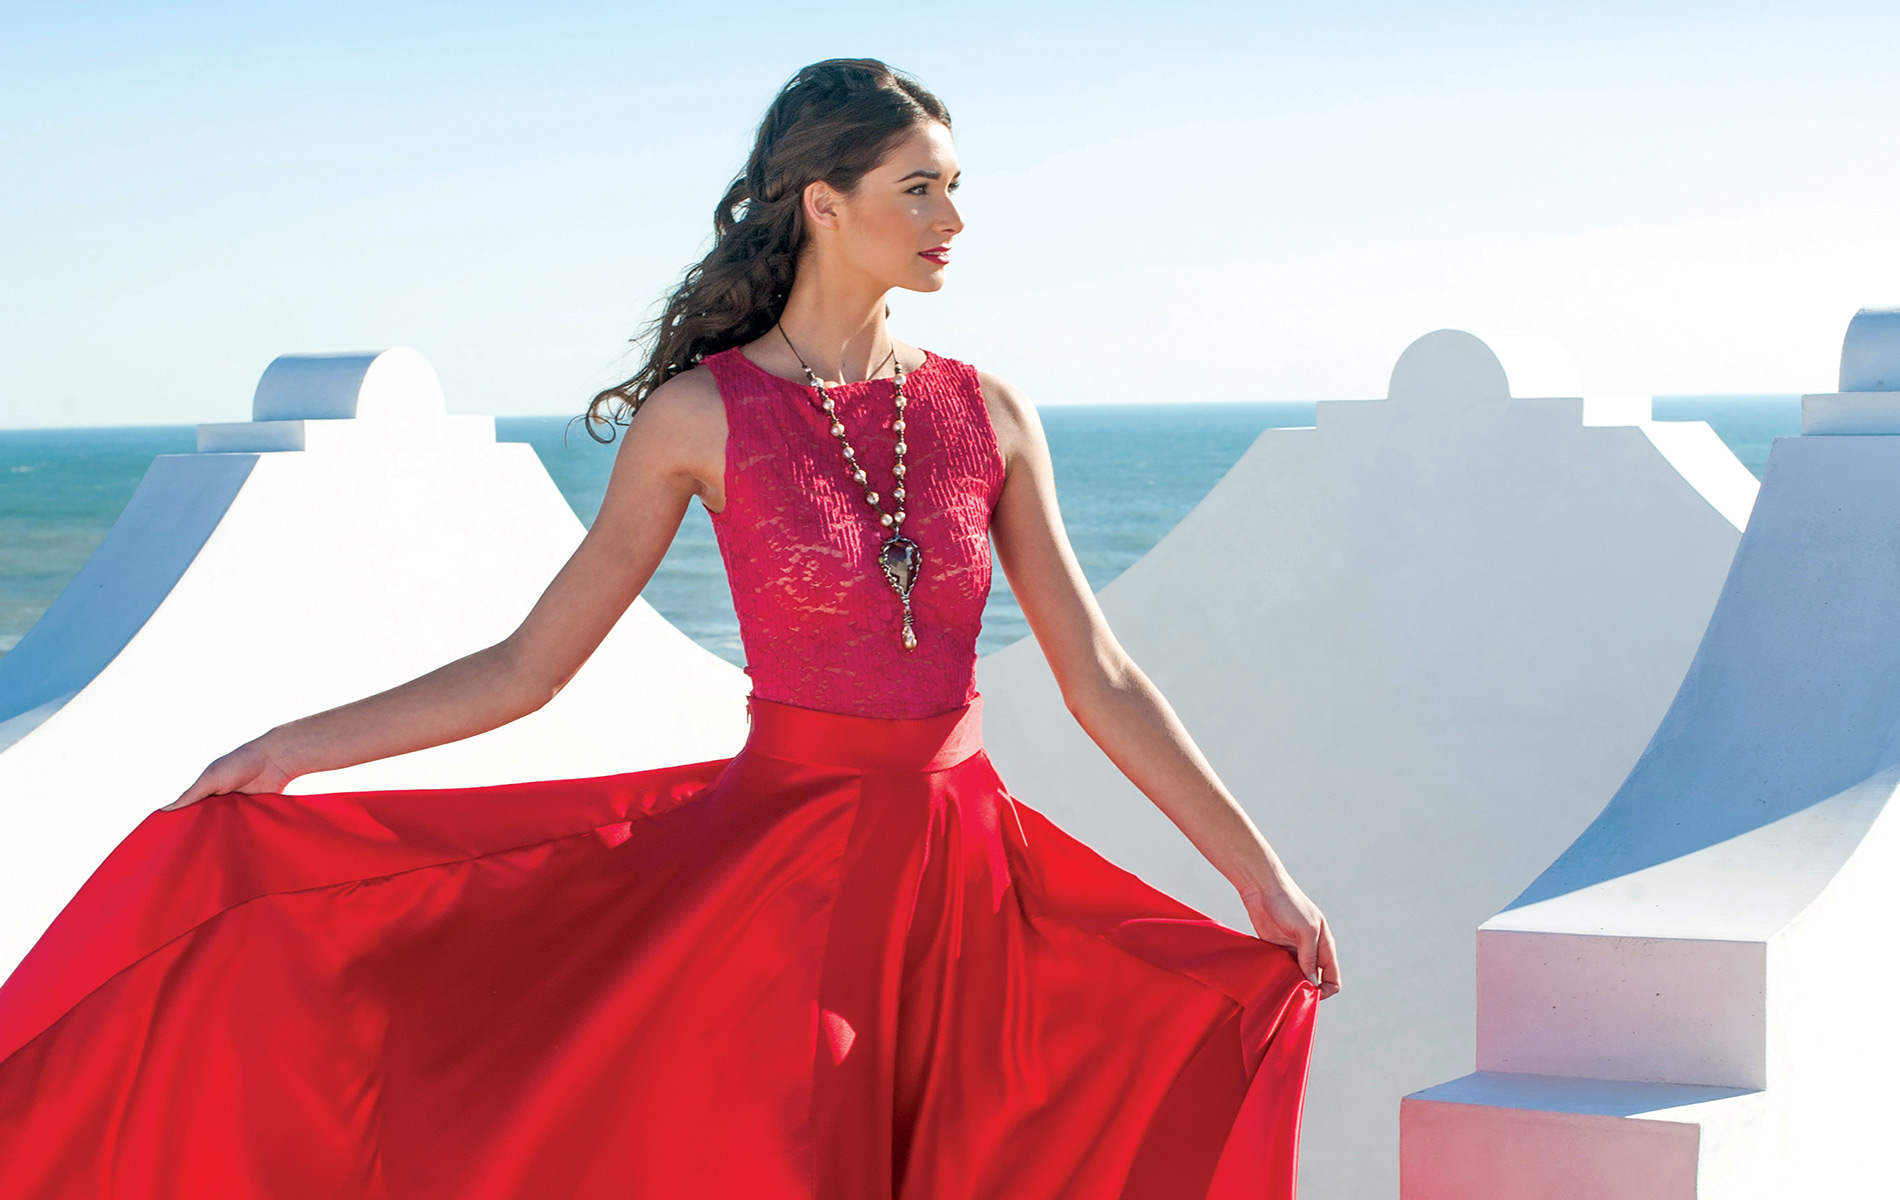 Model in flowing red dress